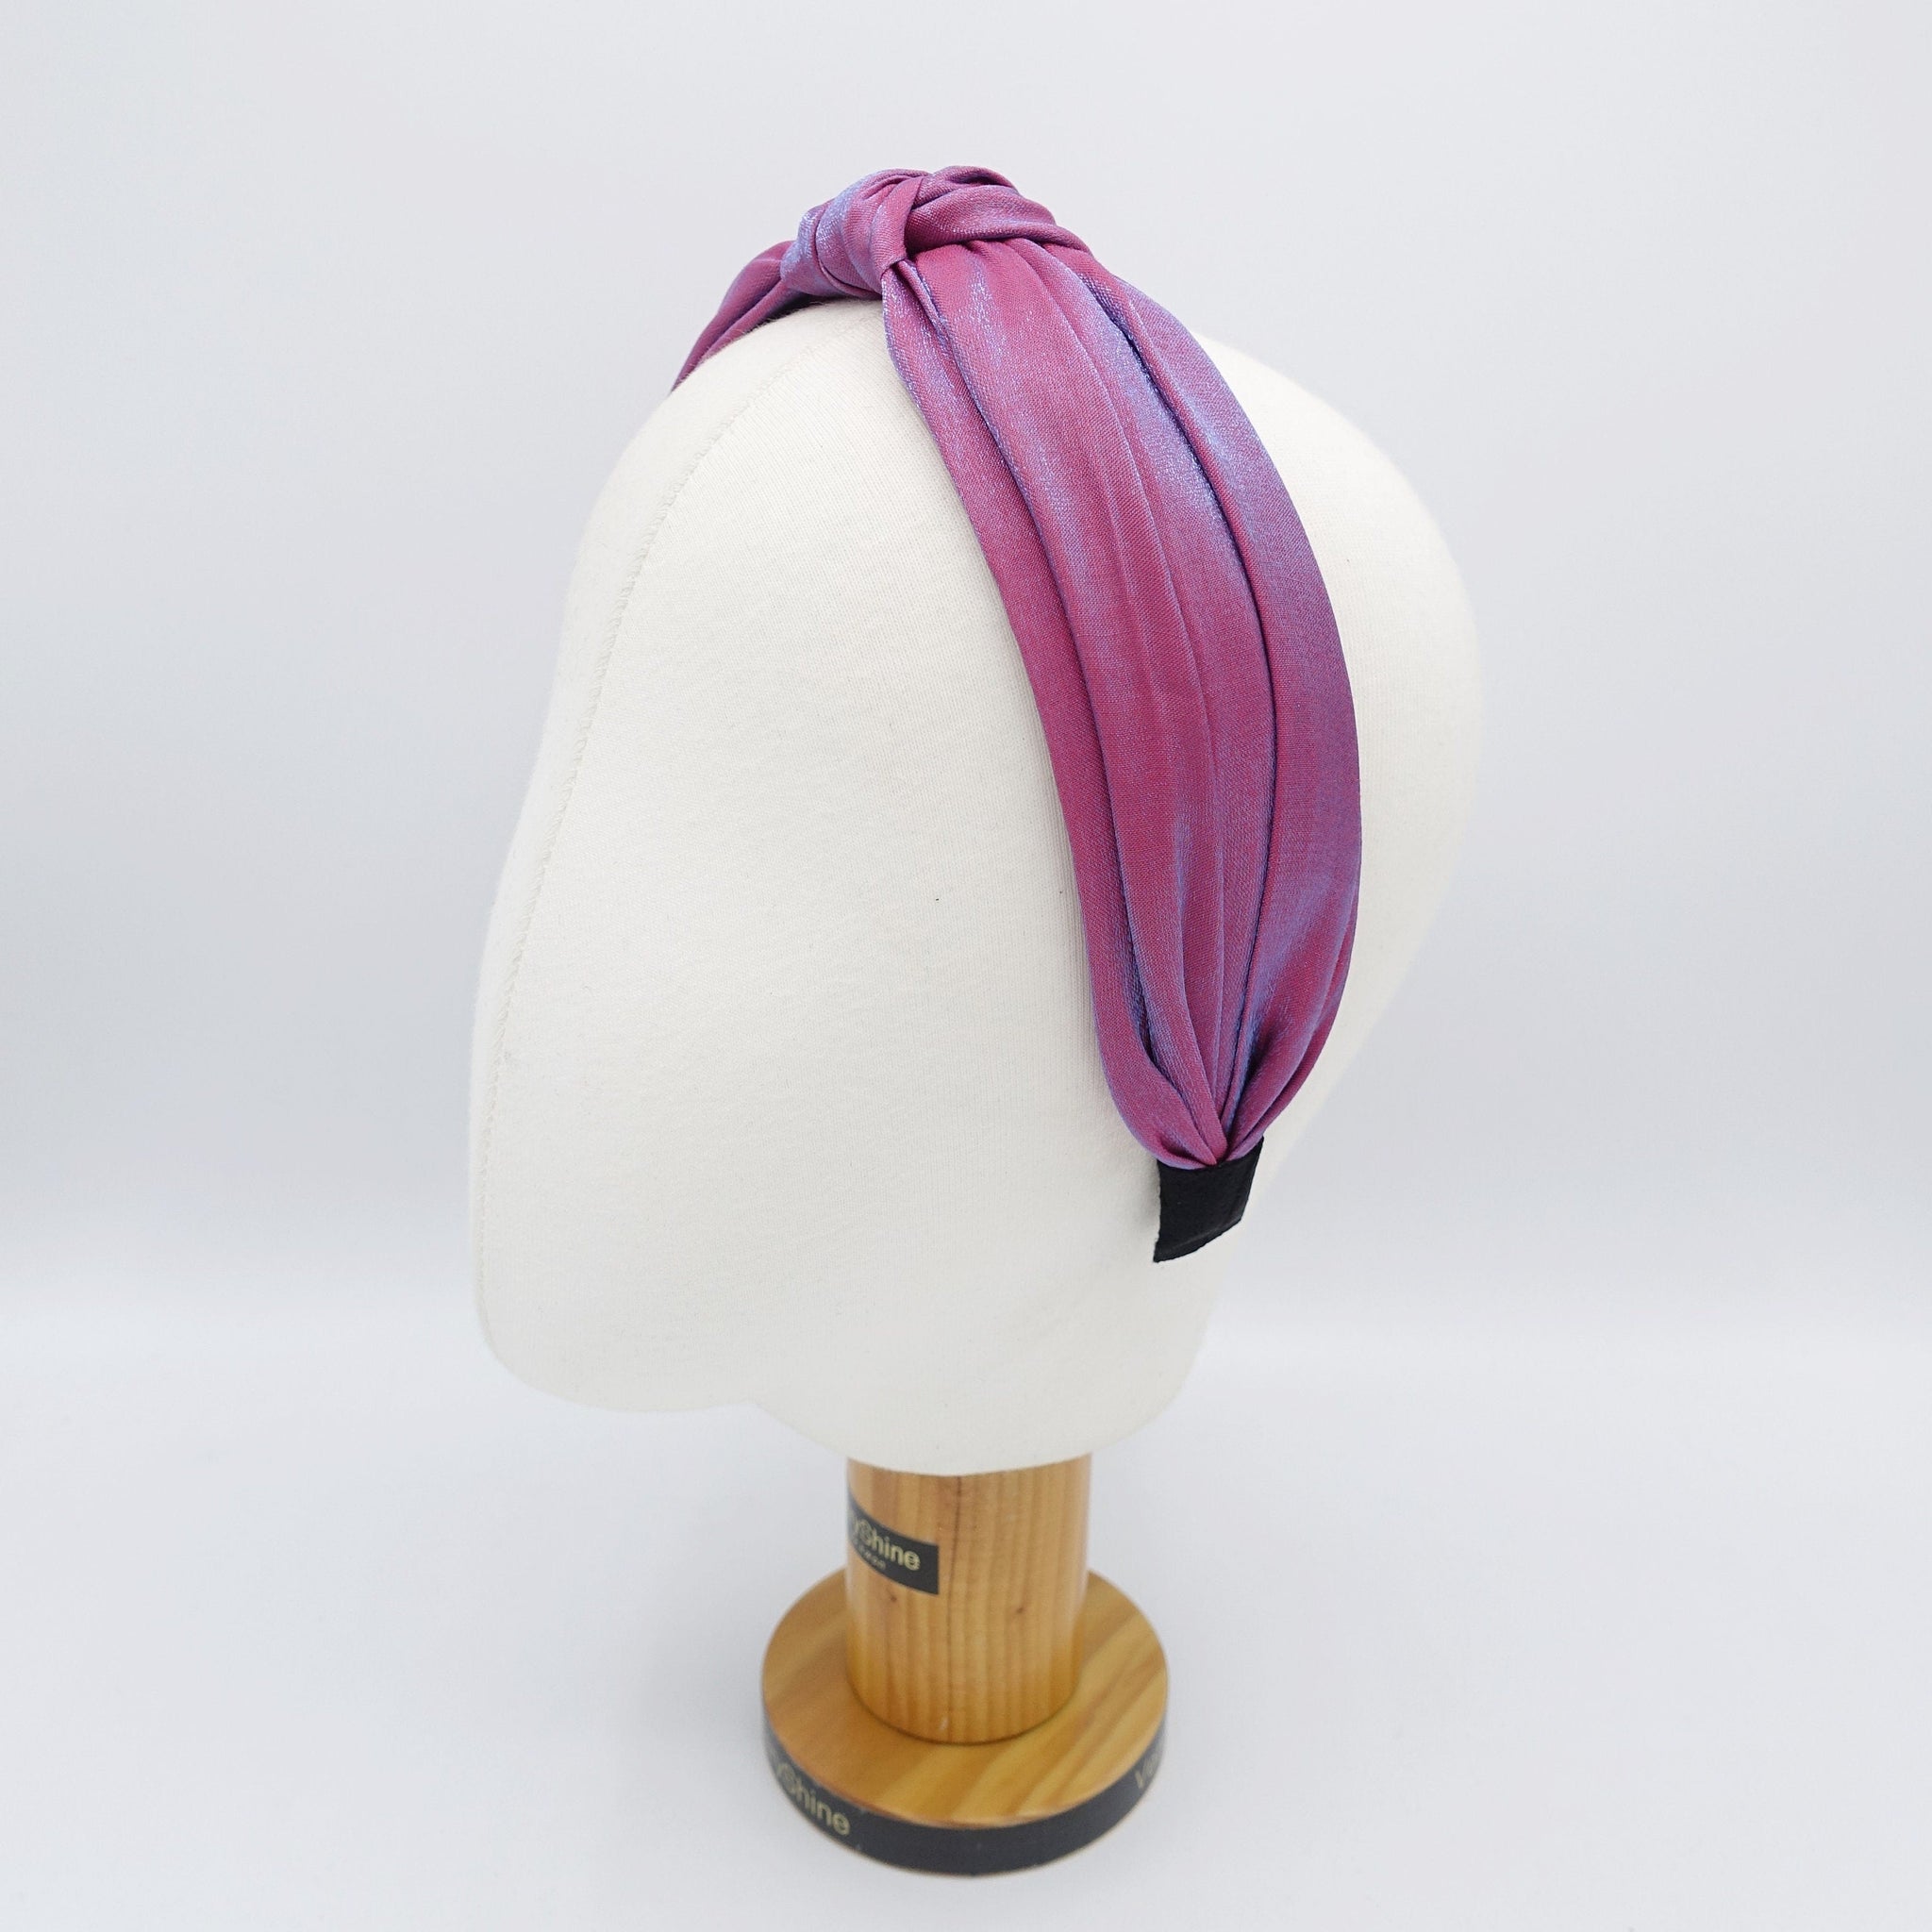 veryshine.com Headband top knot headband, knotted headband, stylish headband for women